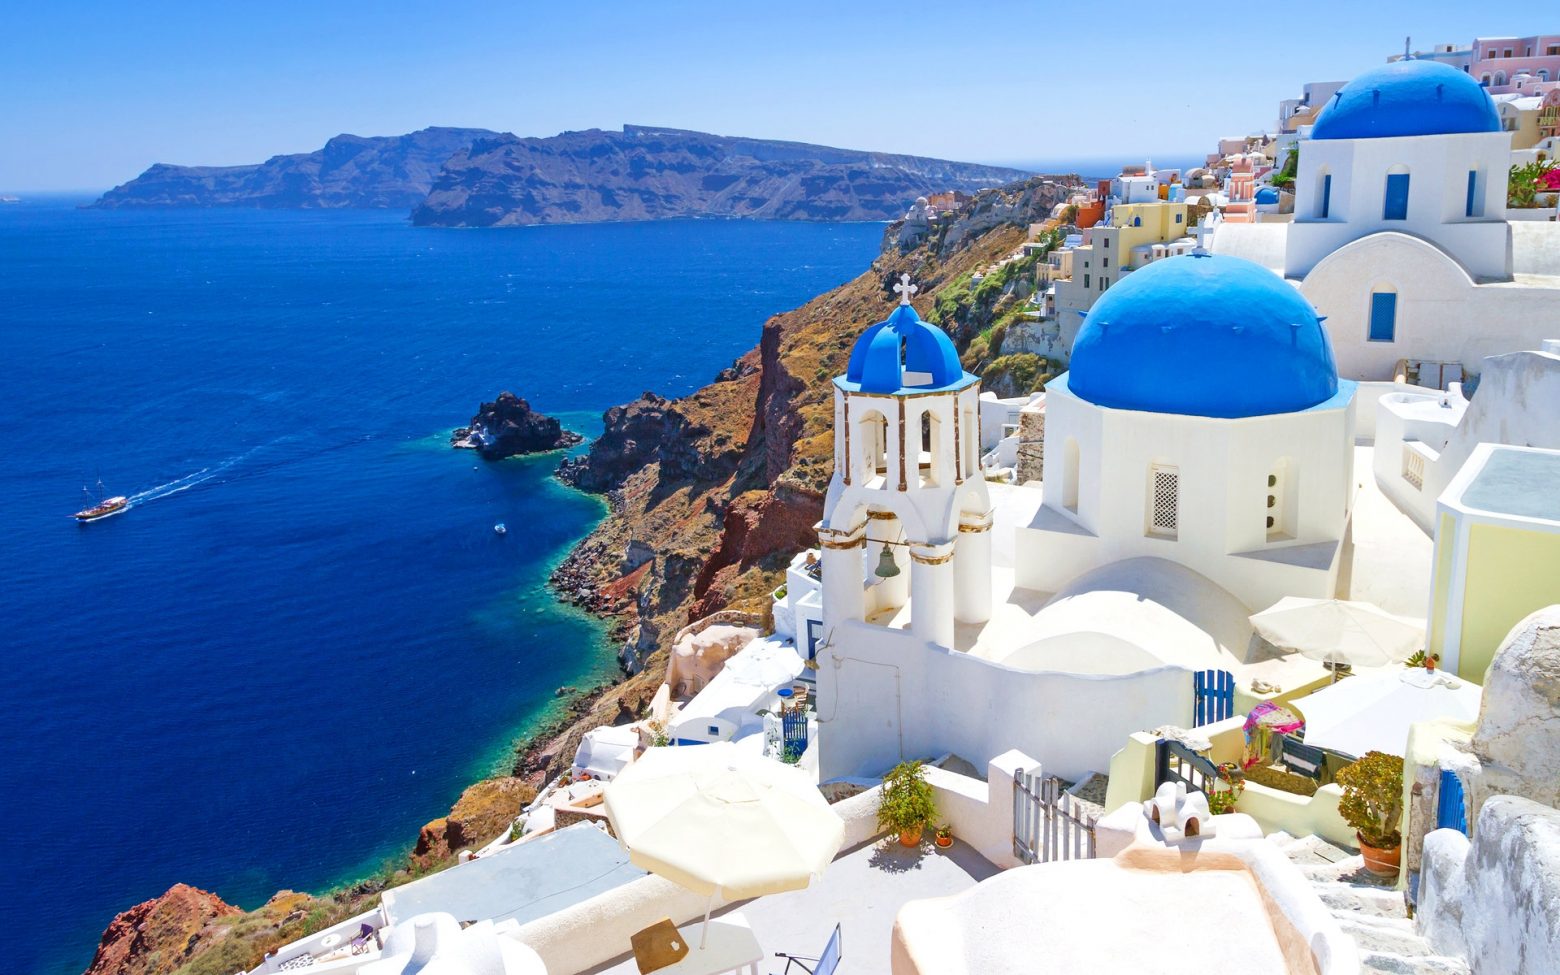 Τουρισμός: Ψηλά στις προτιμήσεις τα ελληνικά νησιά – Οικονομικά πακέτα και προσφορές